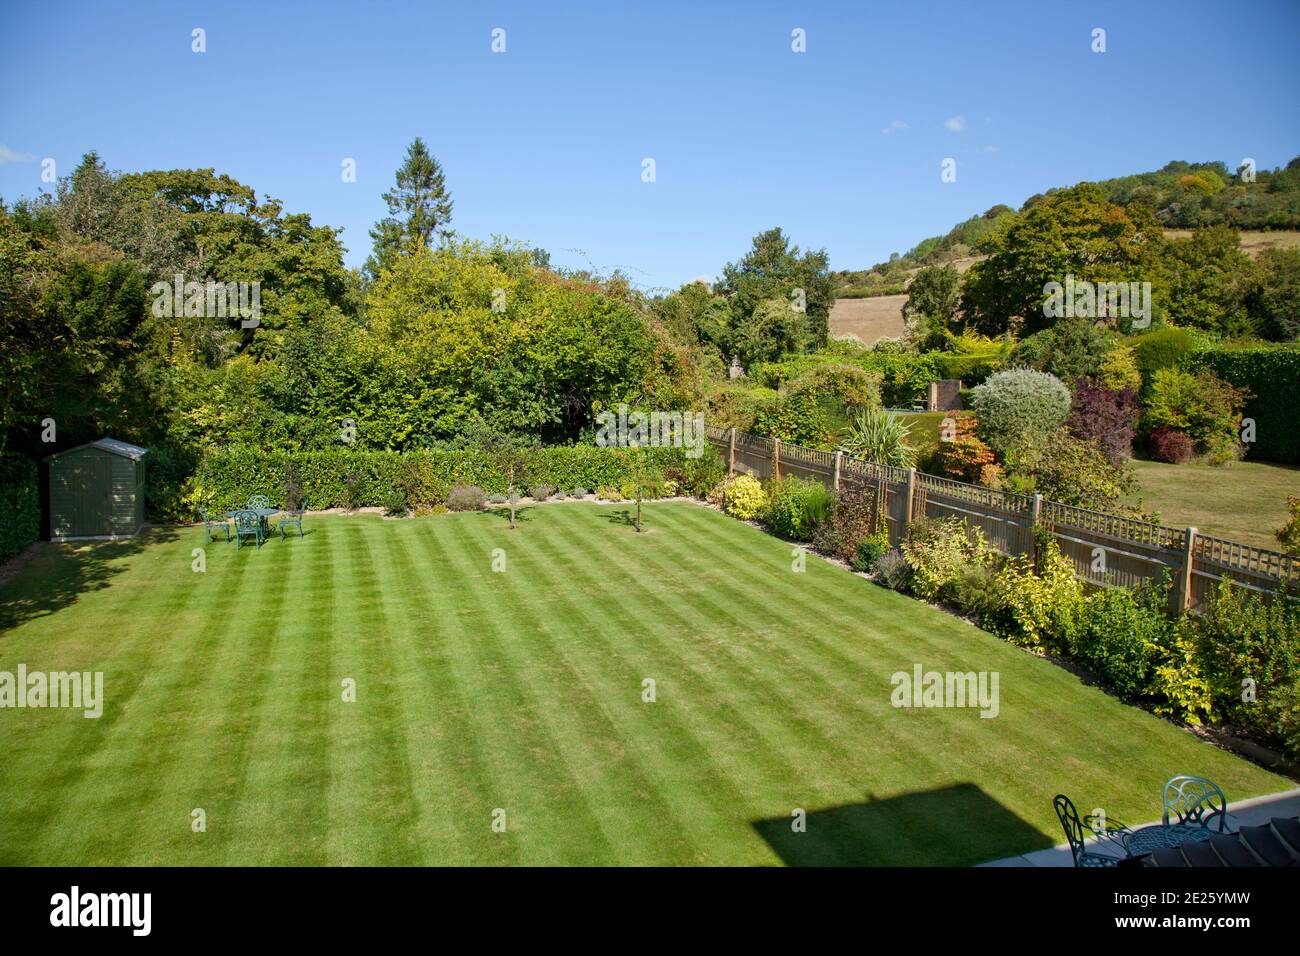 Vue d'ensemble du jardin avec pelouse strippée, clôture de jardin et vue lointaine sur la colline Banque D'Images